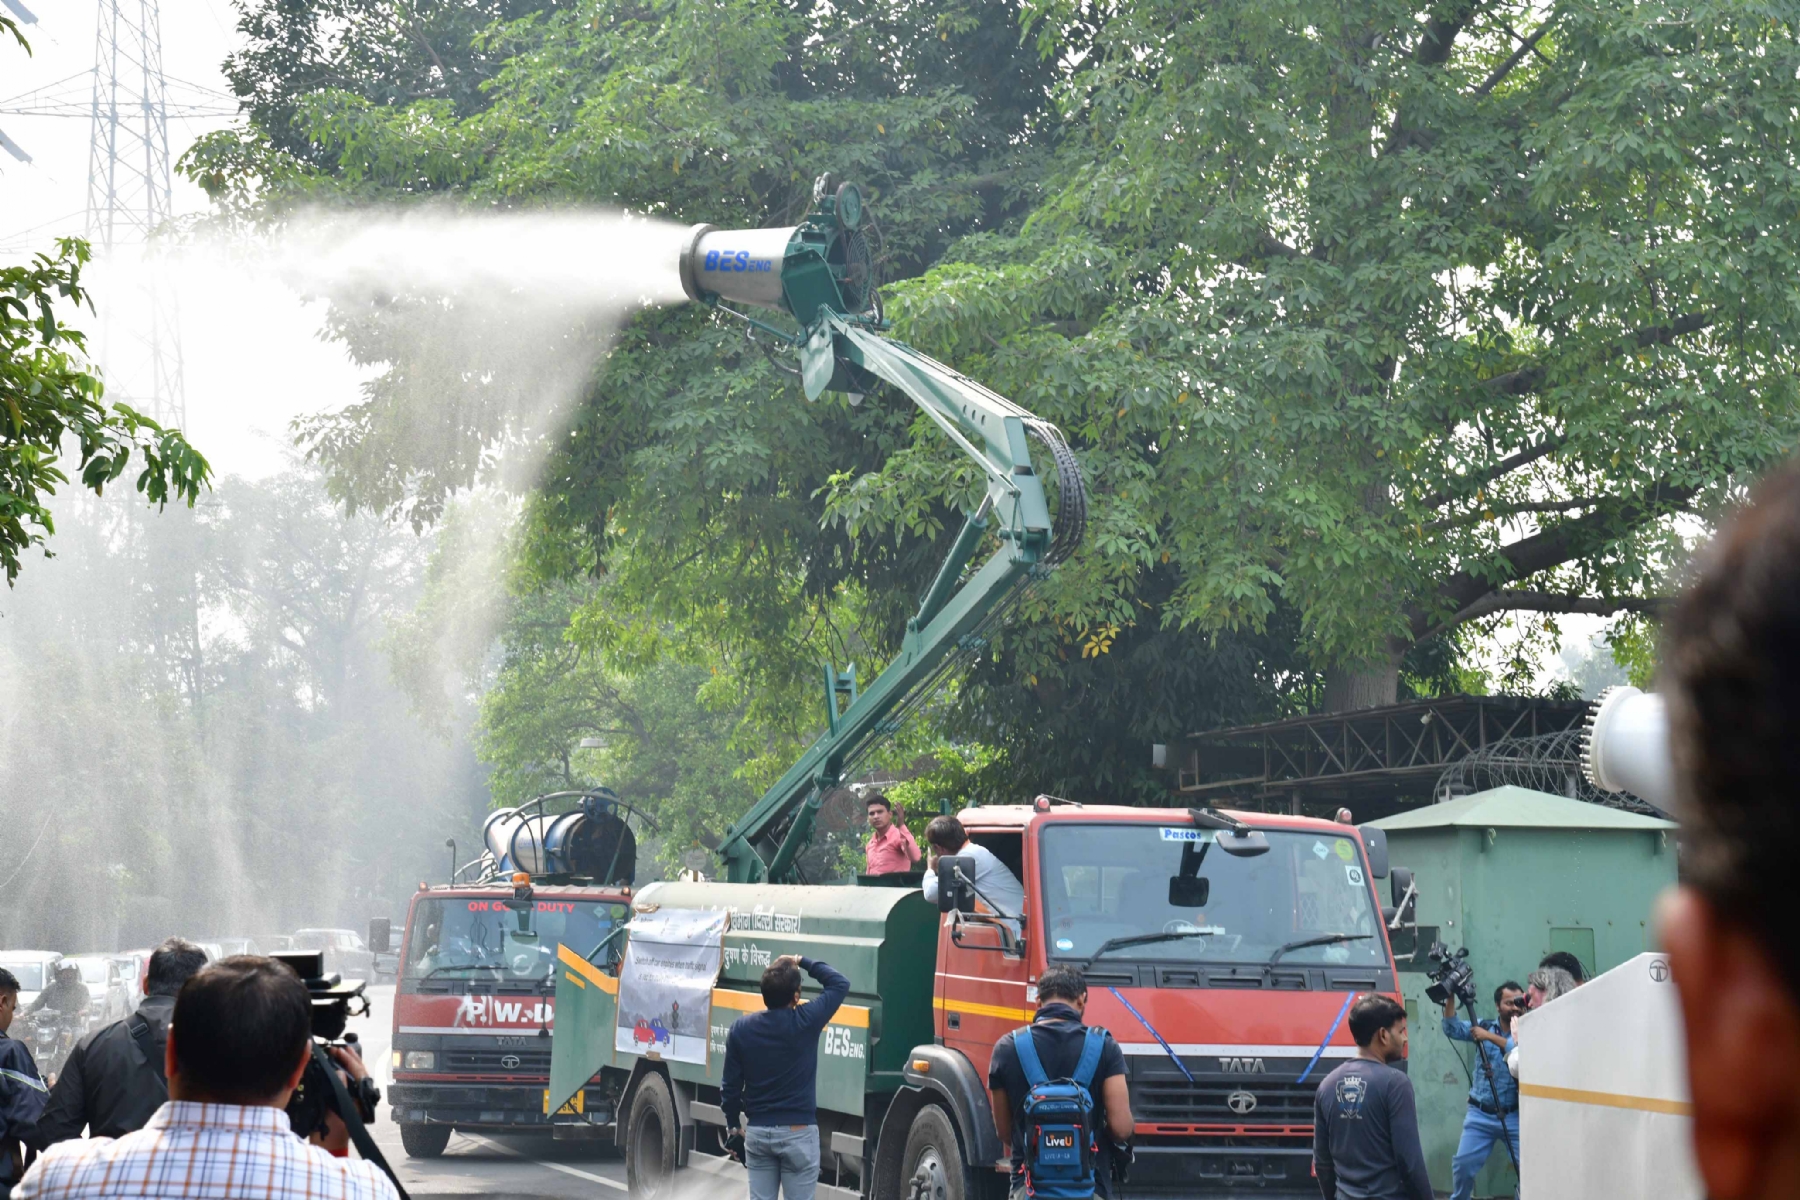 नई दिल्ली में मंगलवार 14 नवंबर को दिल्ली सरकार में पर्यावरण मंत्री गोपाल राय ने पानी छिड़काव अभियान को झंडी दिखा कर की शुरू। हिन्दुस्थान समाचार फोटो गणेश बिष्ट